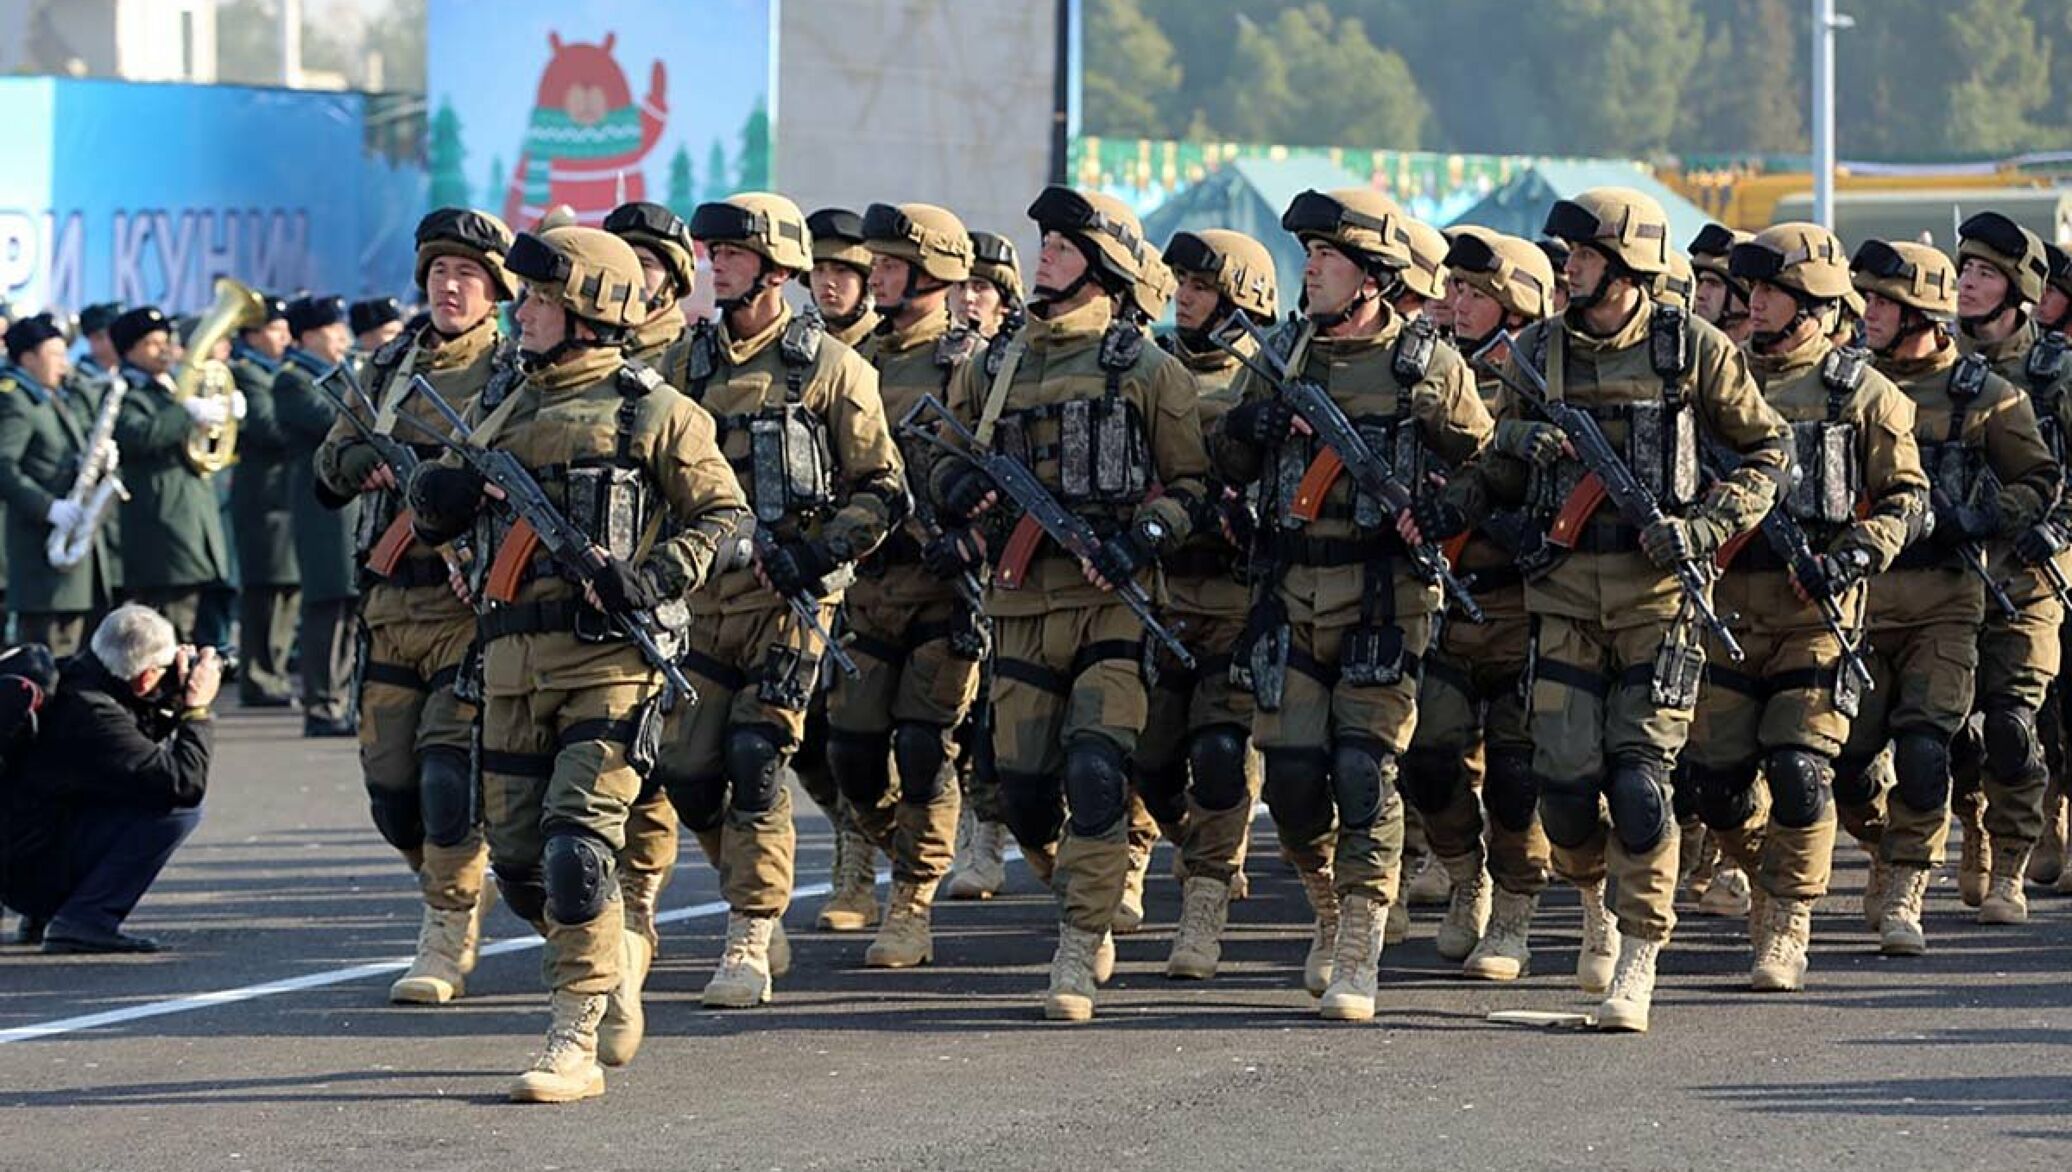 Выяснилось, какое место занял Узбекистан в рейтинге армий мира